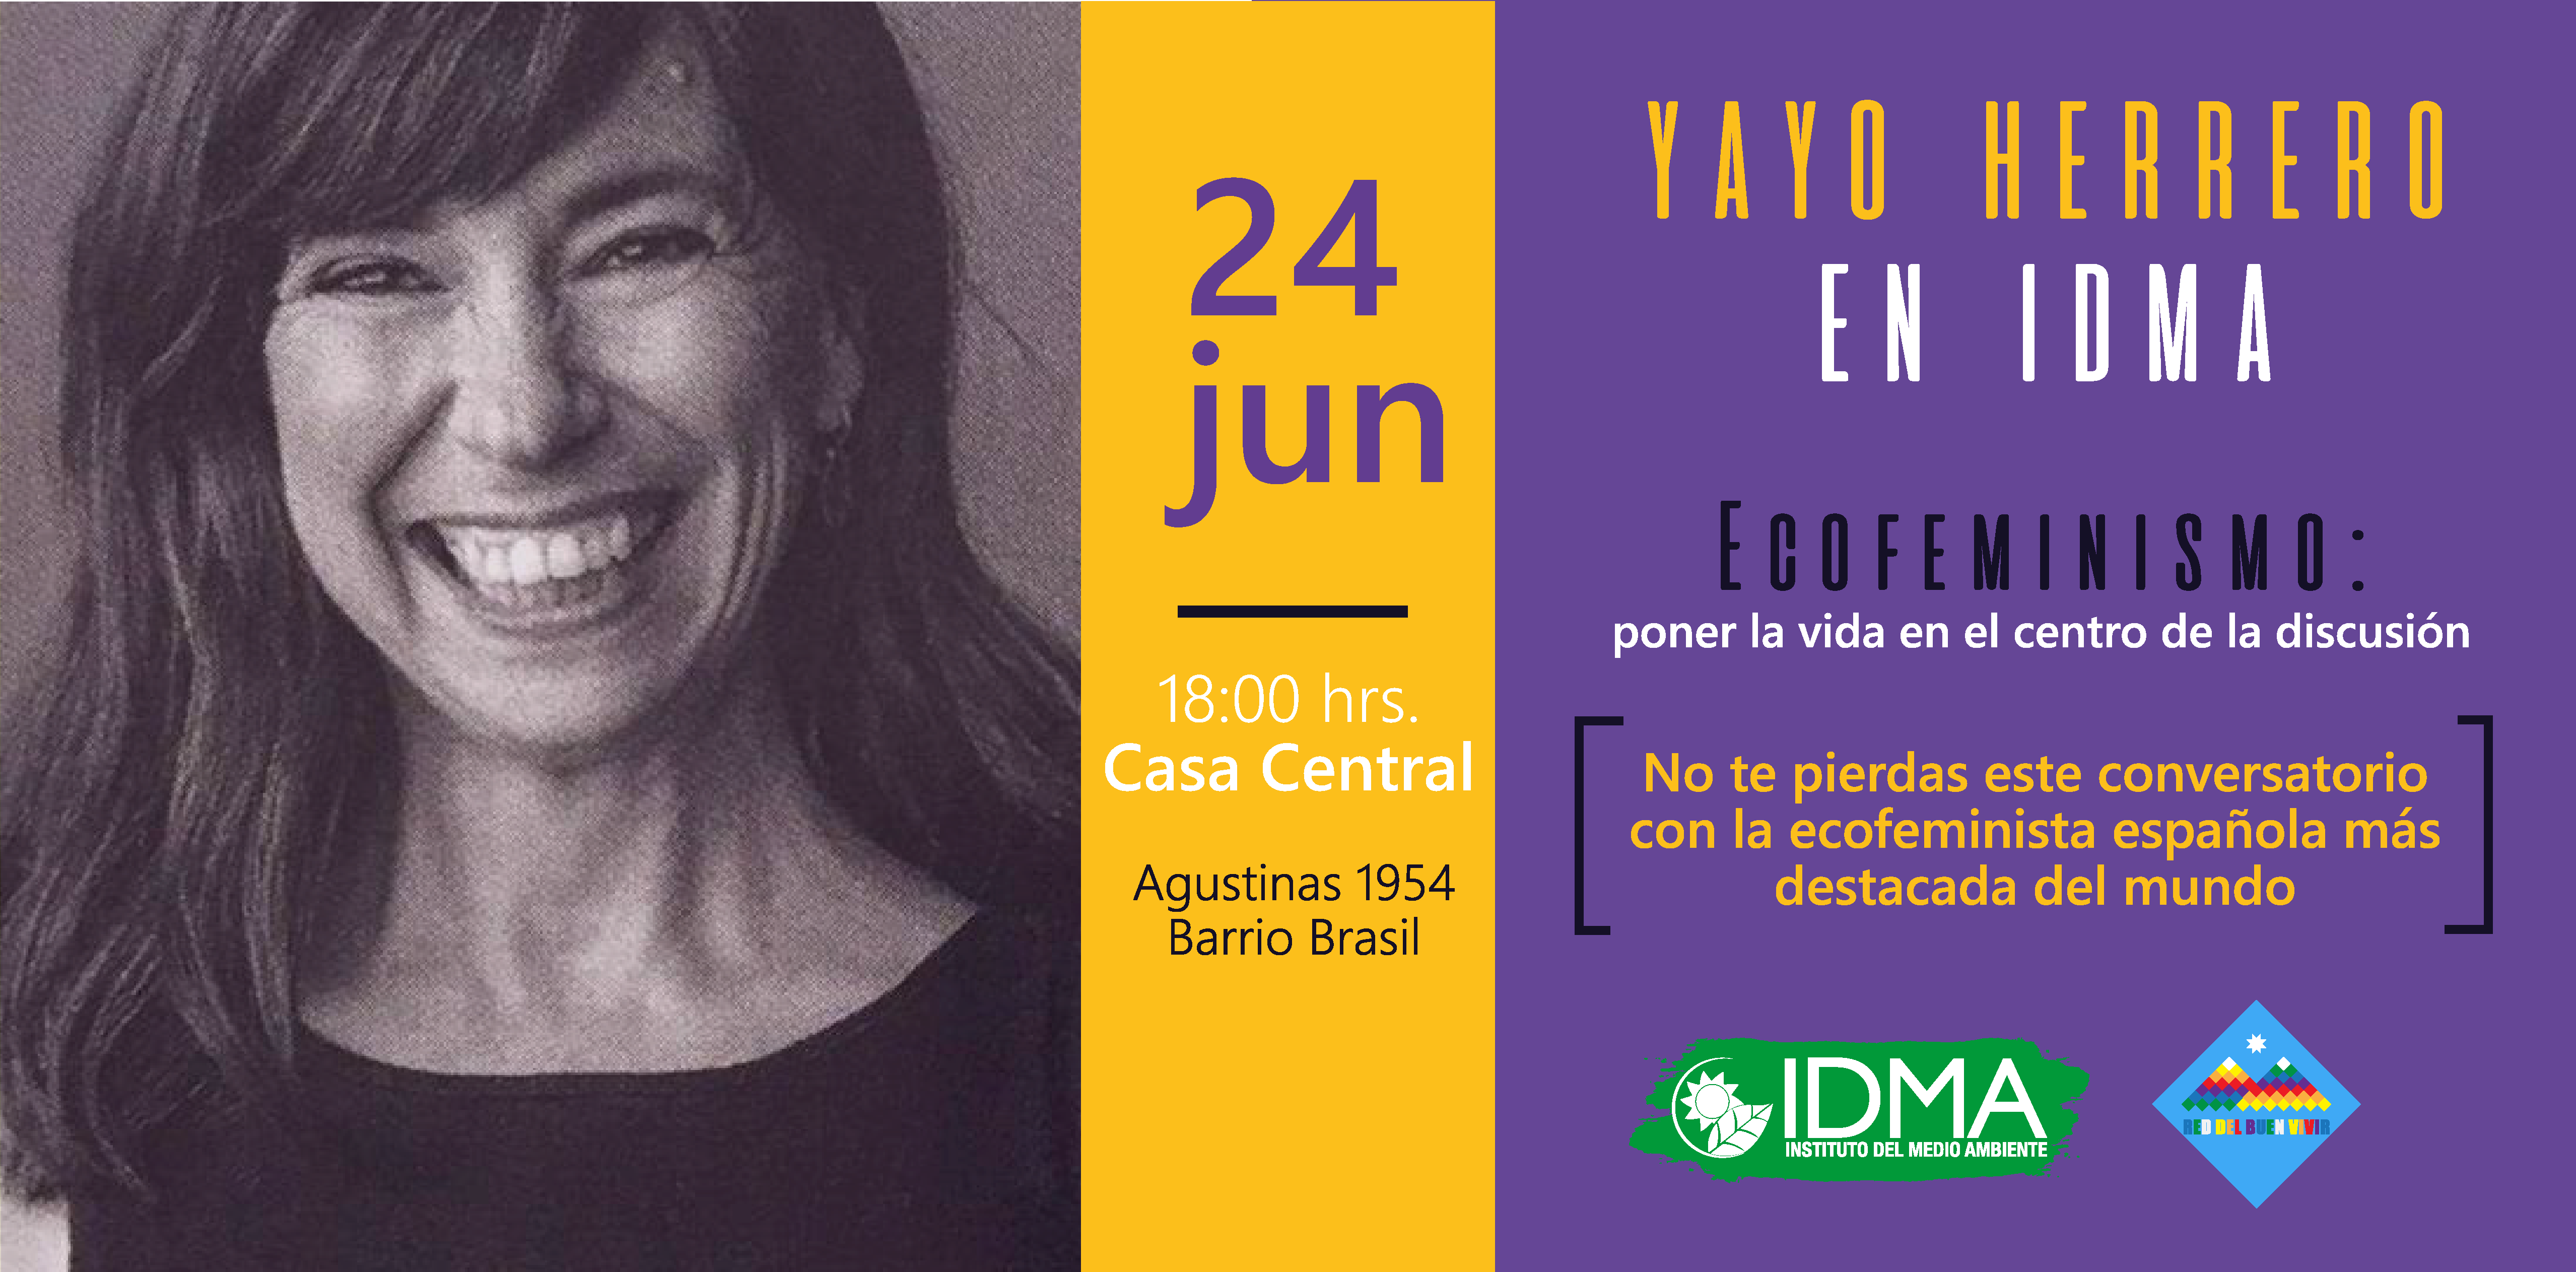 ¡Yayo Herrero en IDMA! Ecofeminismo: poner la vida en el centro de la discusión